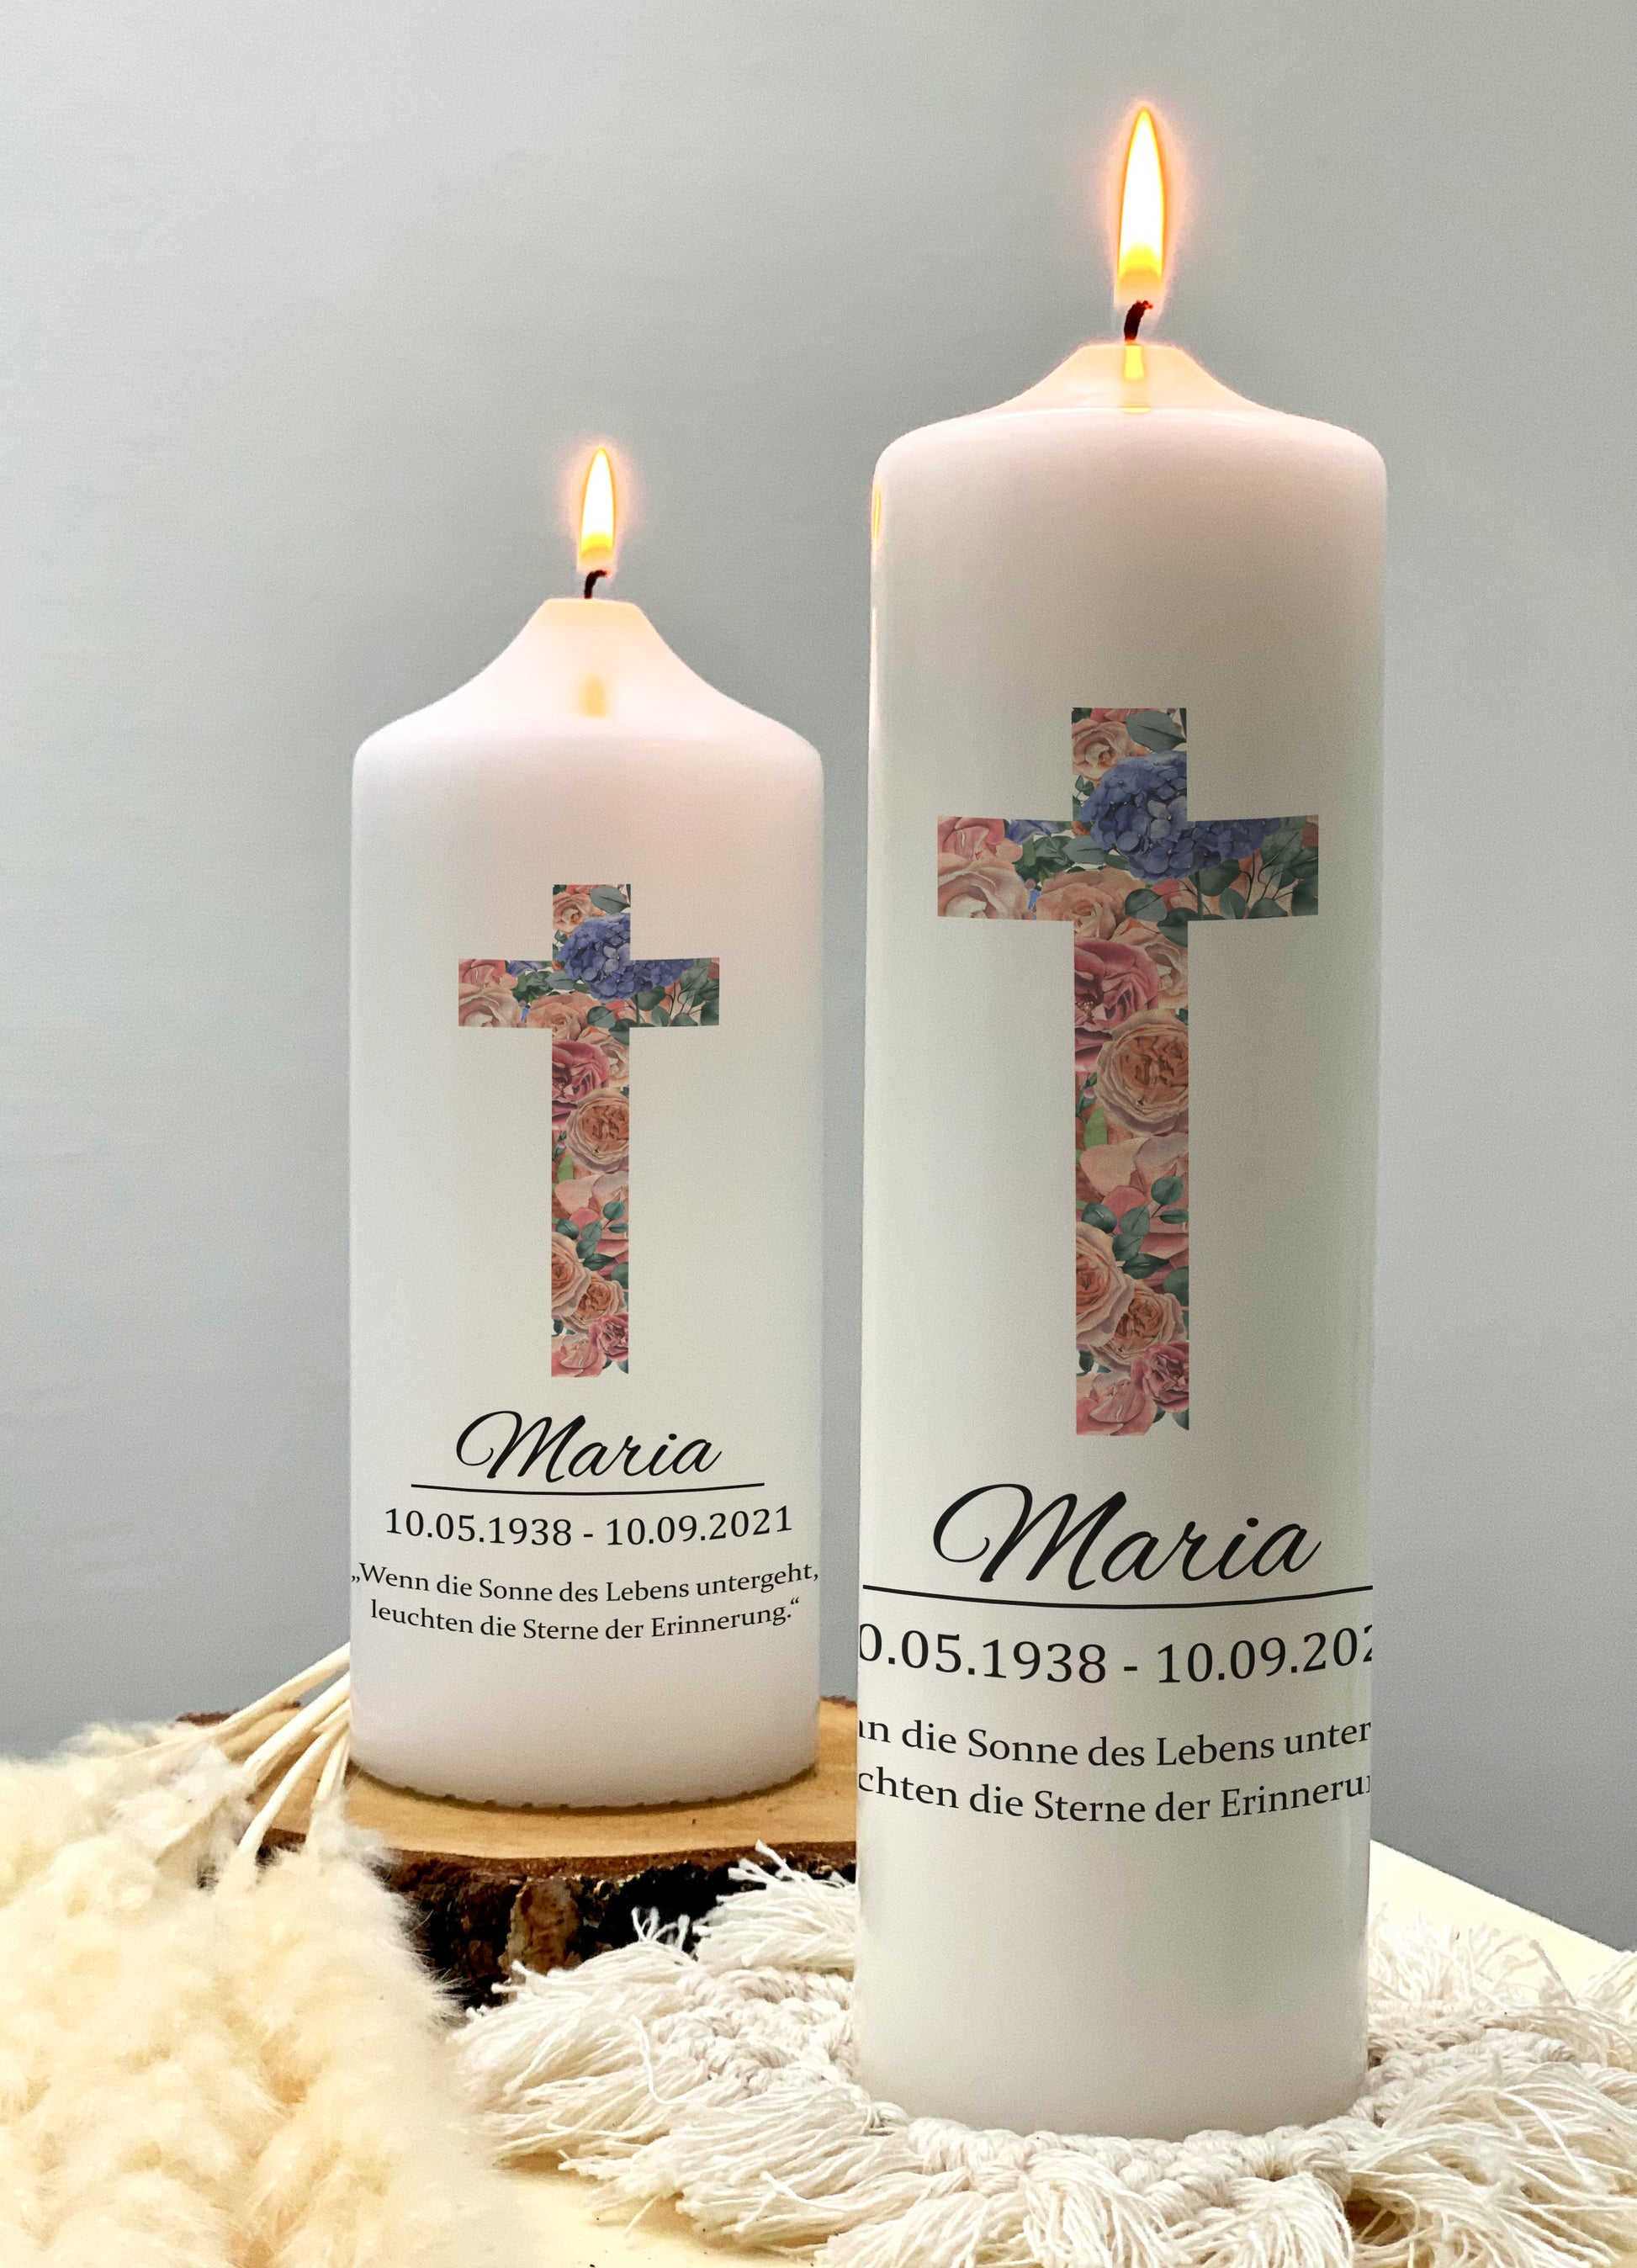 Trauerkerze "Blumen Kreuz" - mit Name, Geburtsdatum, Sterbedatum und Spruch personalisiert